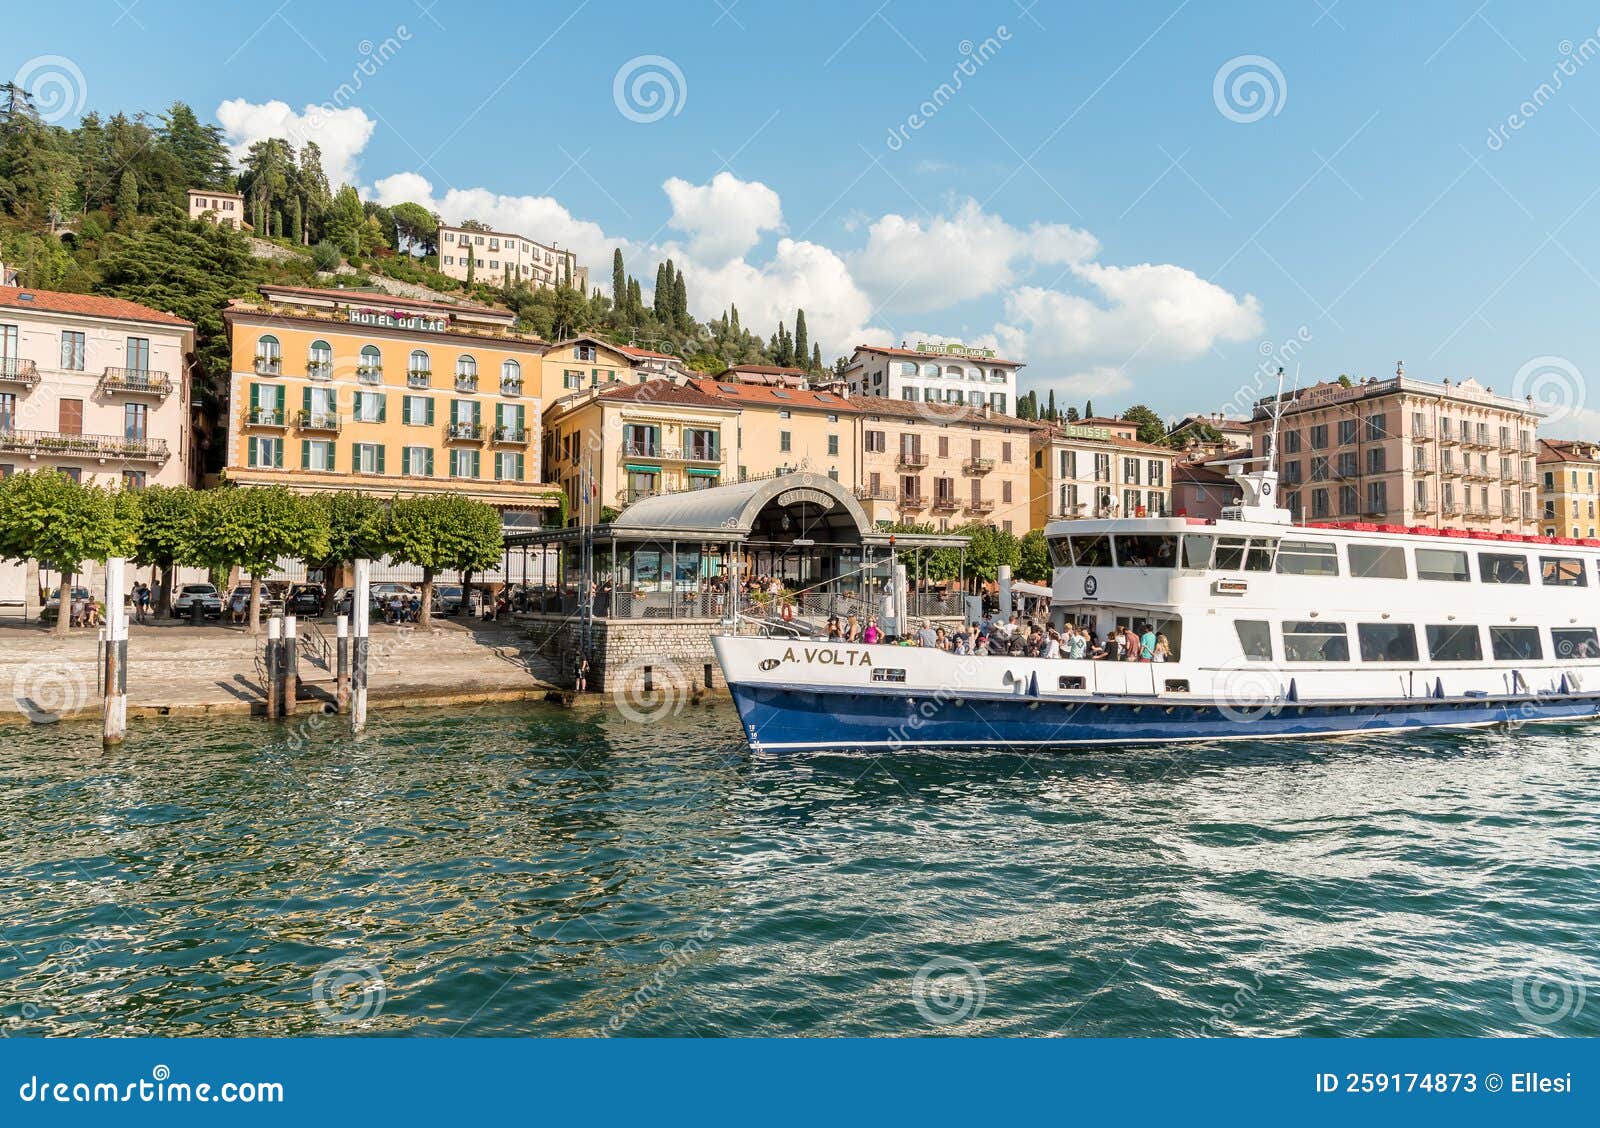 boat tour bellagio italy